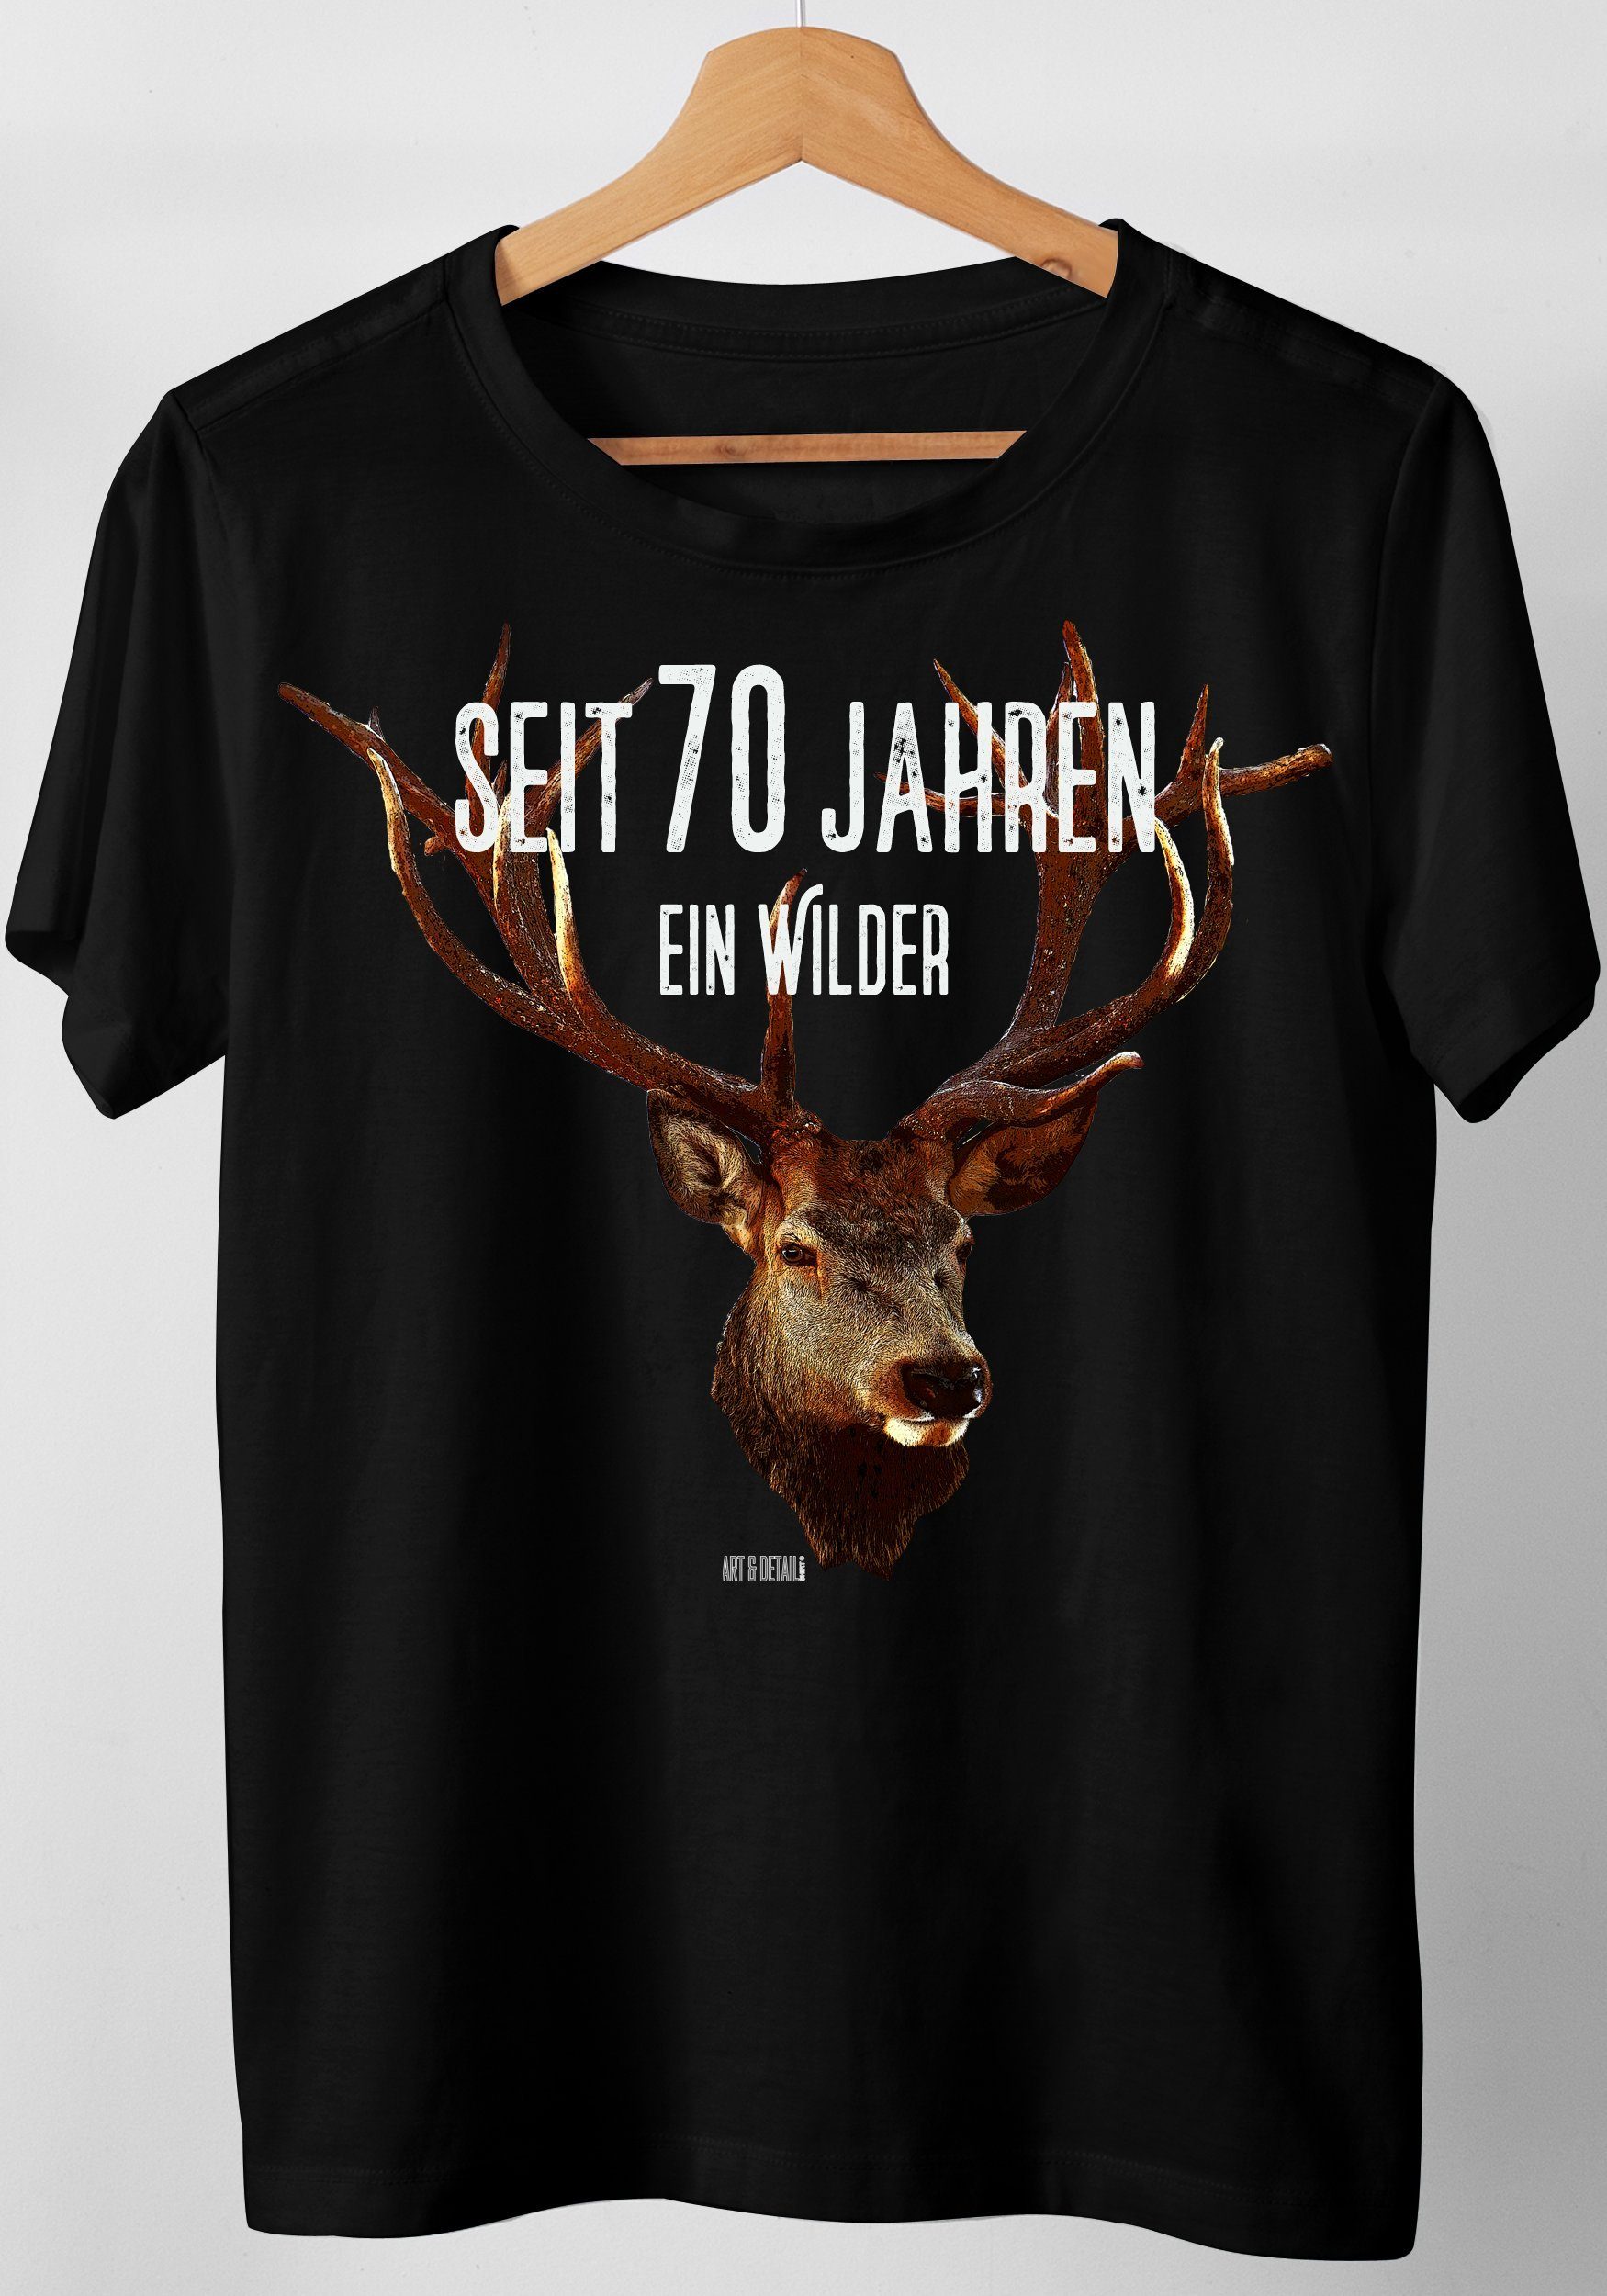 Shirt Hirsch & 40, 80, 70, T-Shirt 70 Jahren seit 50, ... Jahreszahlen, Detail Geburtstag Art Wilder Schwarz 60, Jahre Geschenk, 30, ein Hirsch